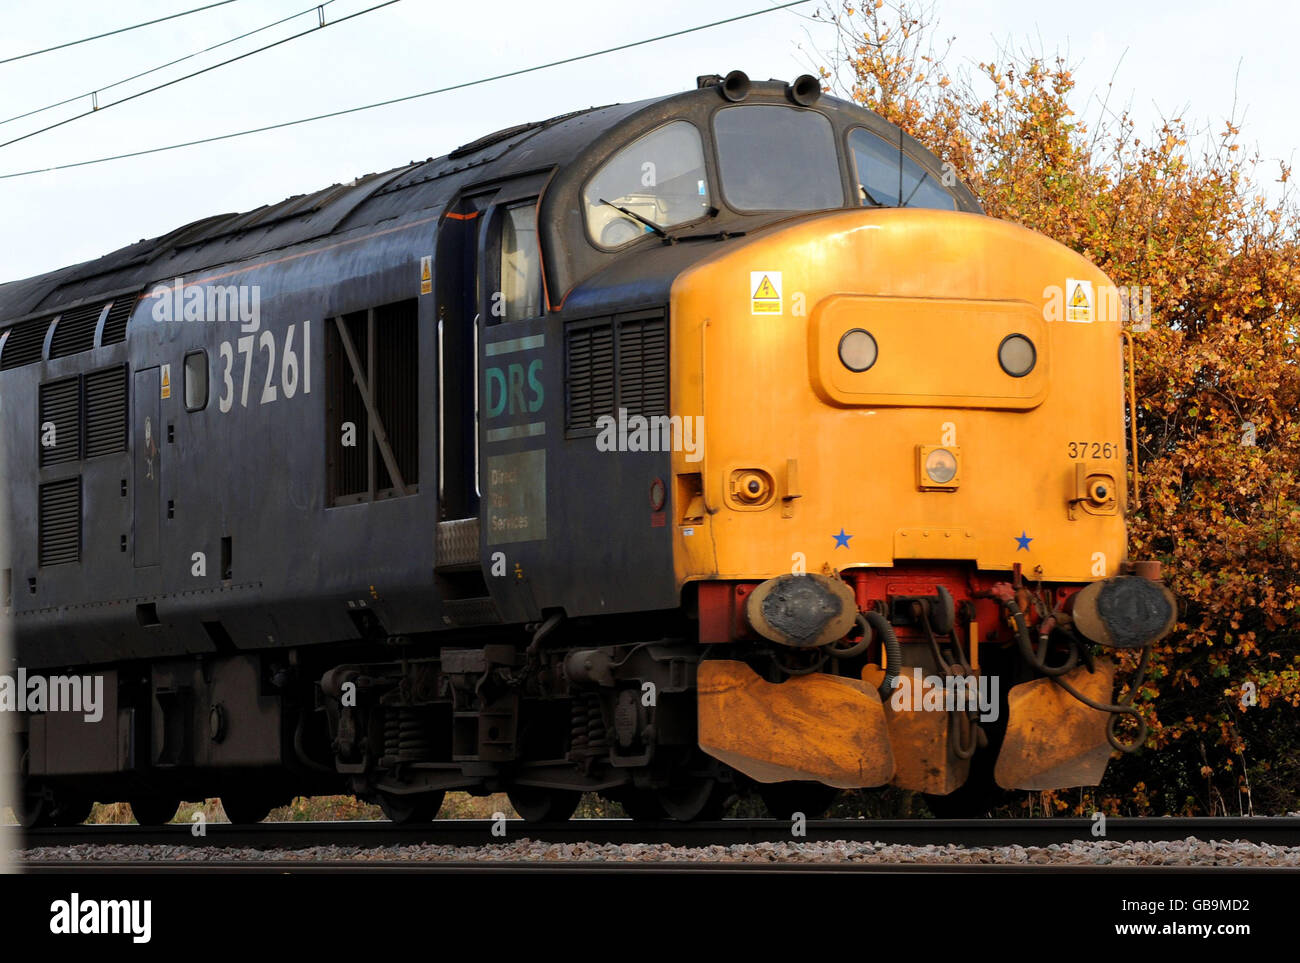 Stock de transport: Direct Rail Services (DRS) 37 série diesel locomotive 37261 'Caithness' voyage à travers Ingatestone, Essex. Banque D'Images